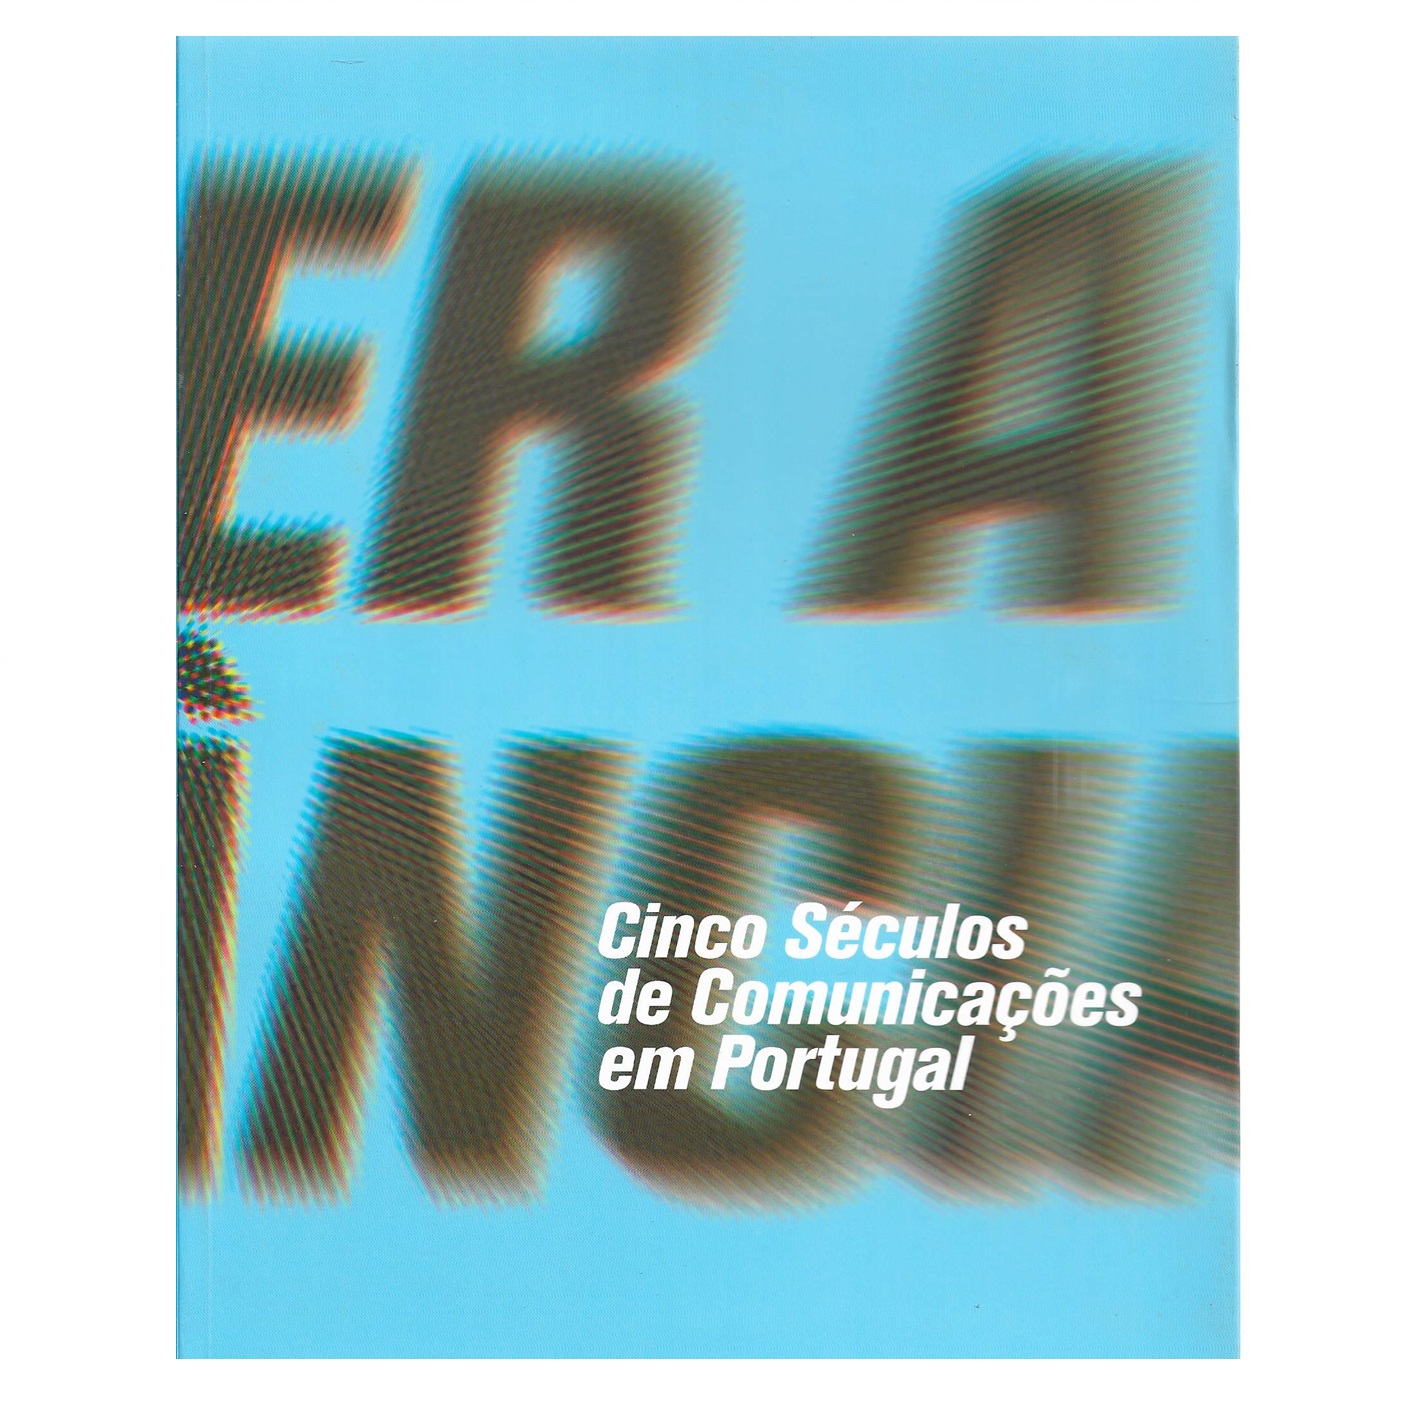 Cinco séculos de comunicações em Portugal